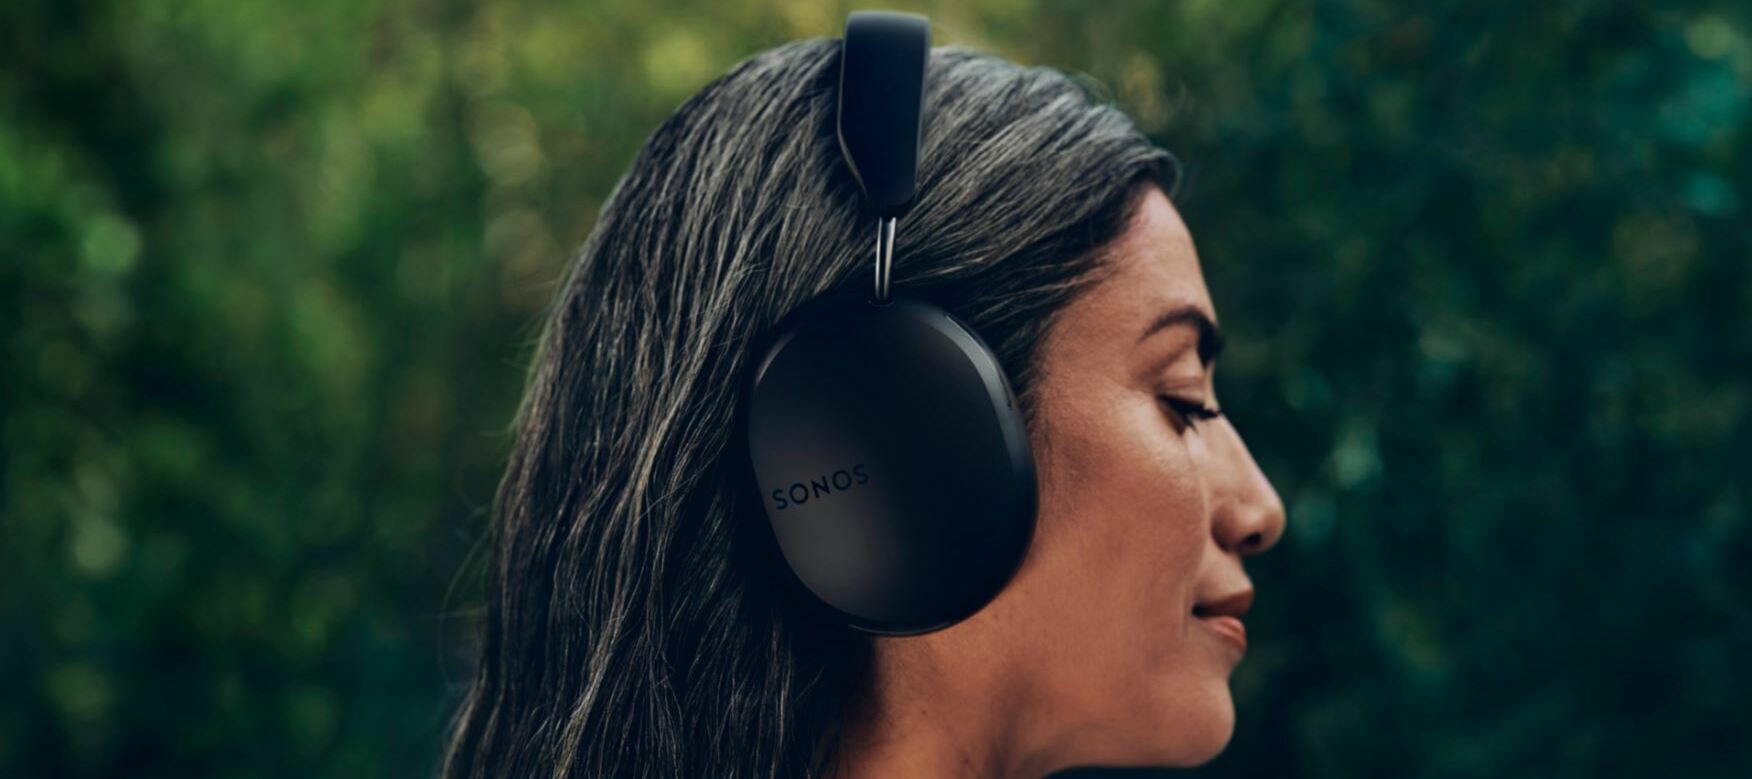 Der lang erwartete erste Kopfhörer: Sonos Ace